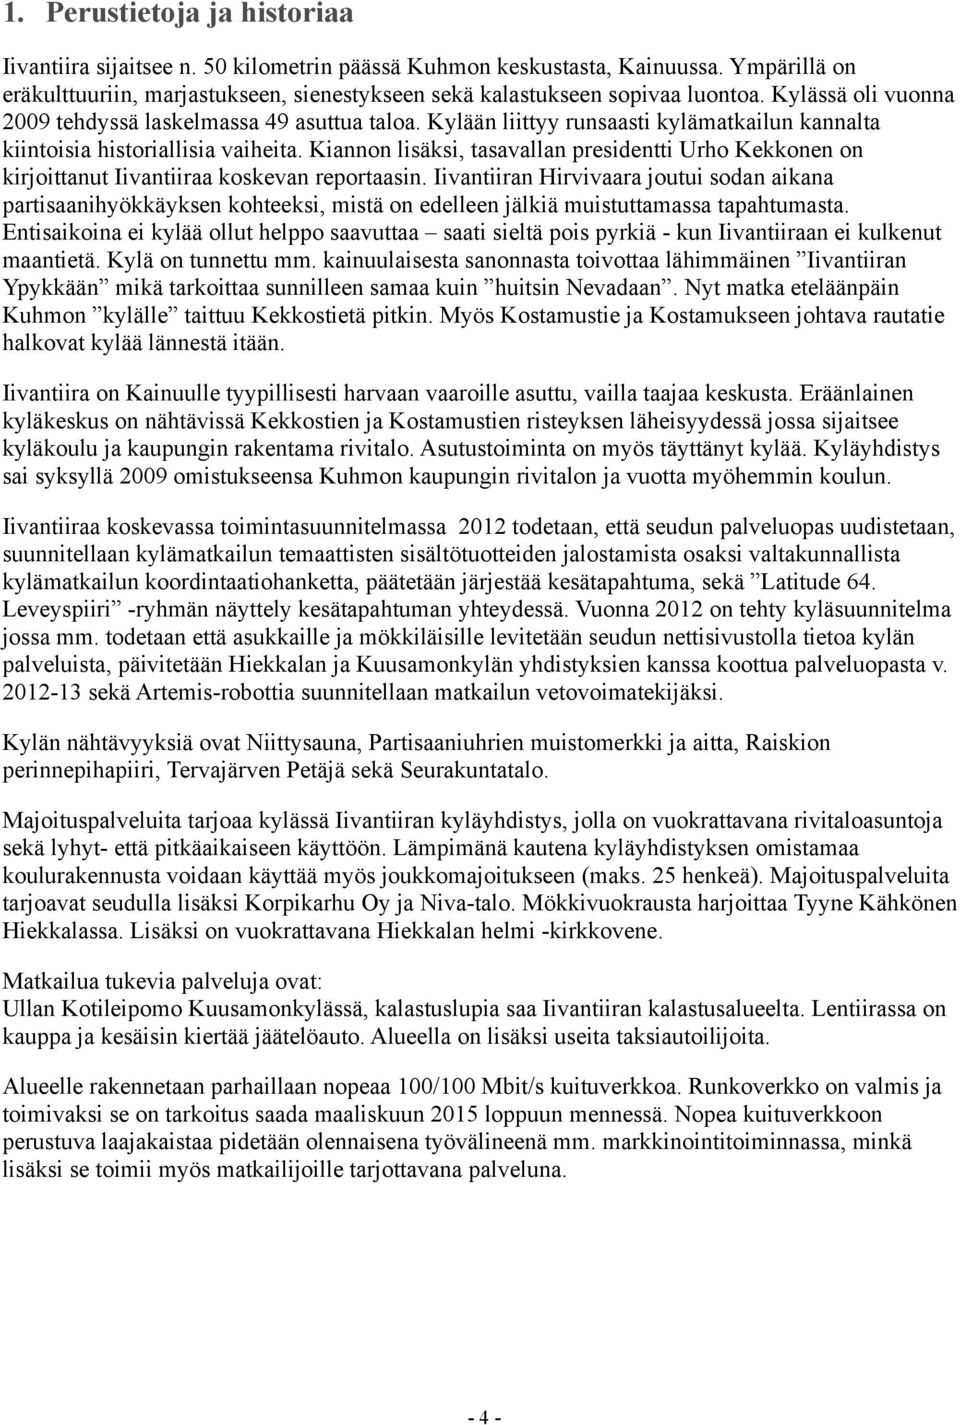 Kiannon lisäksi, tasavallan presidentti Urho Kekkonen on kirjoittanut Iivantiiraa koskevan reportaasin.